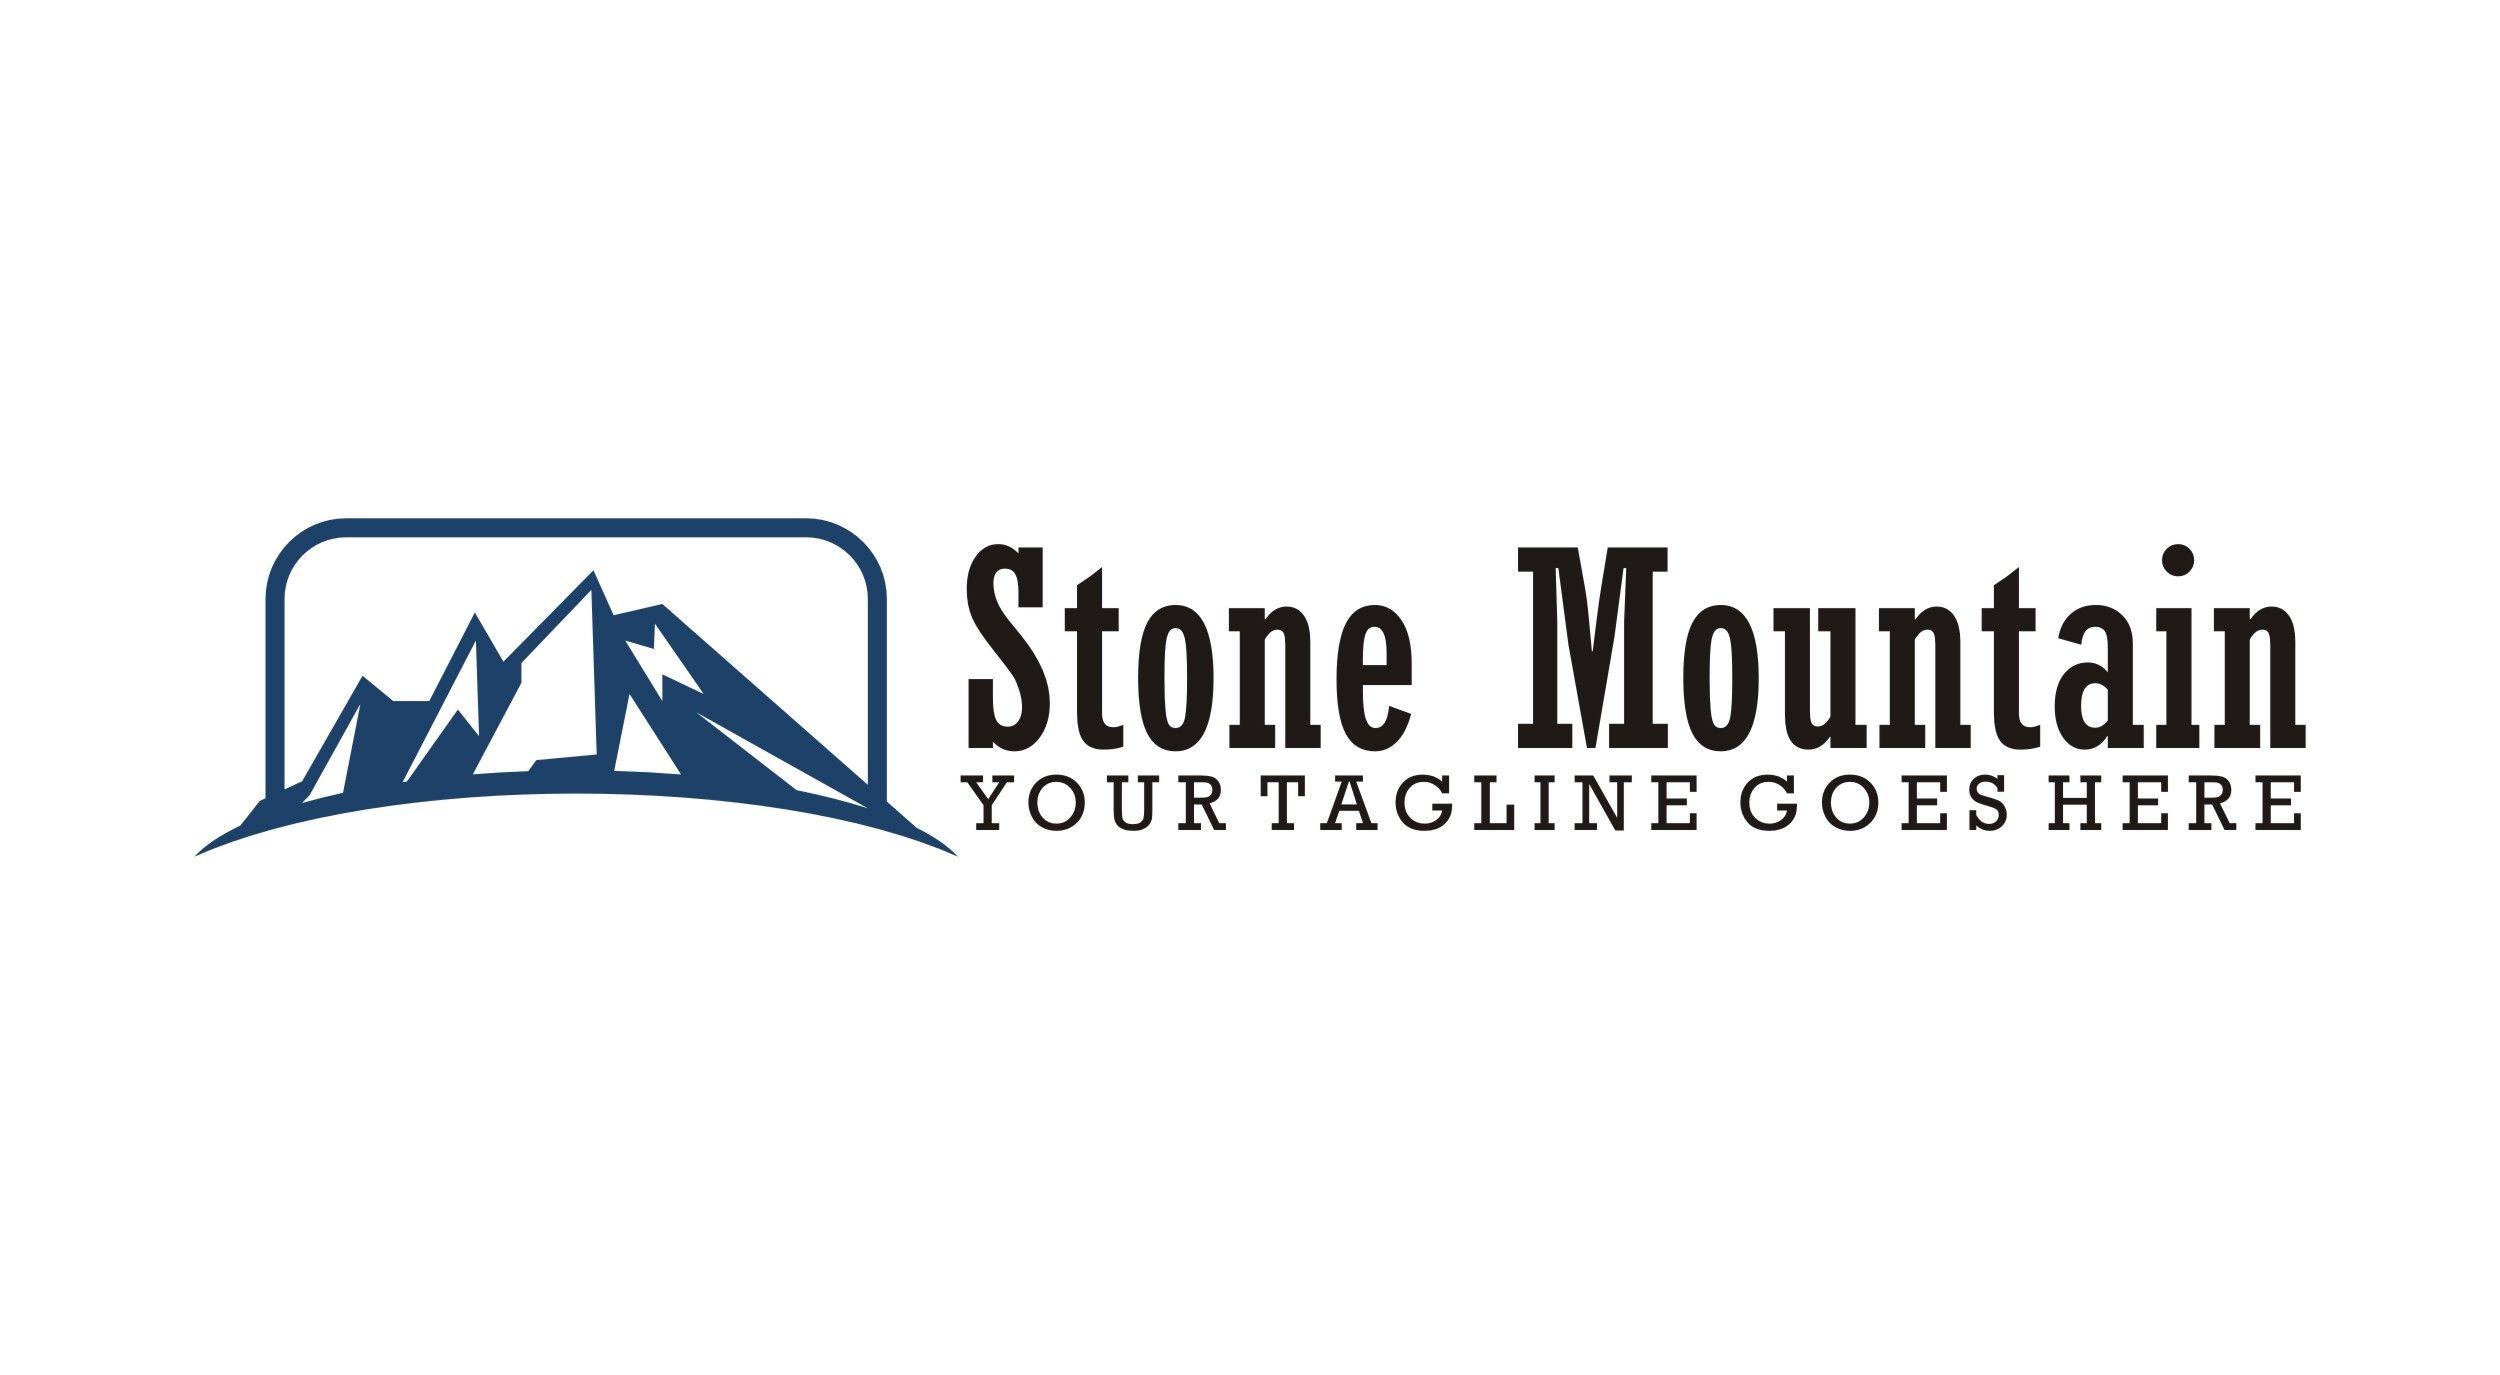 Логотип stone